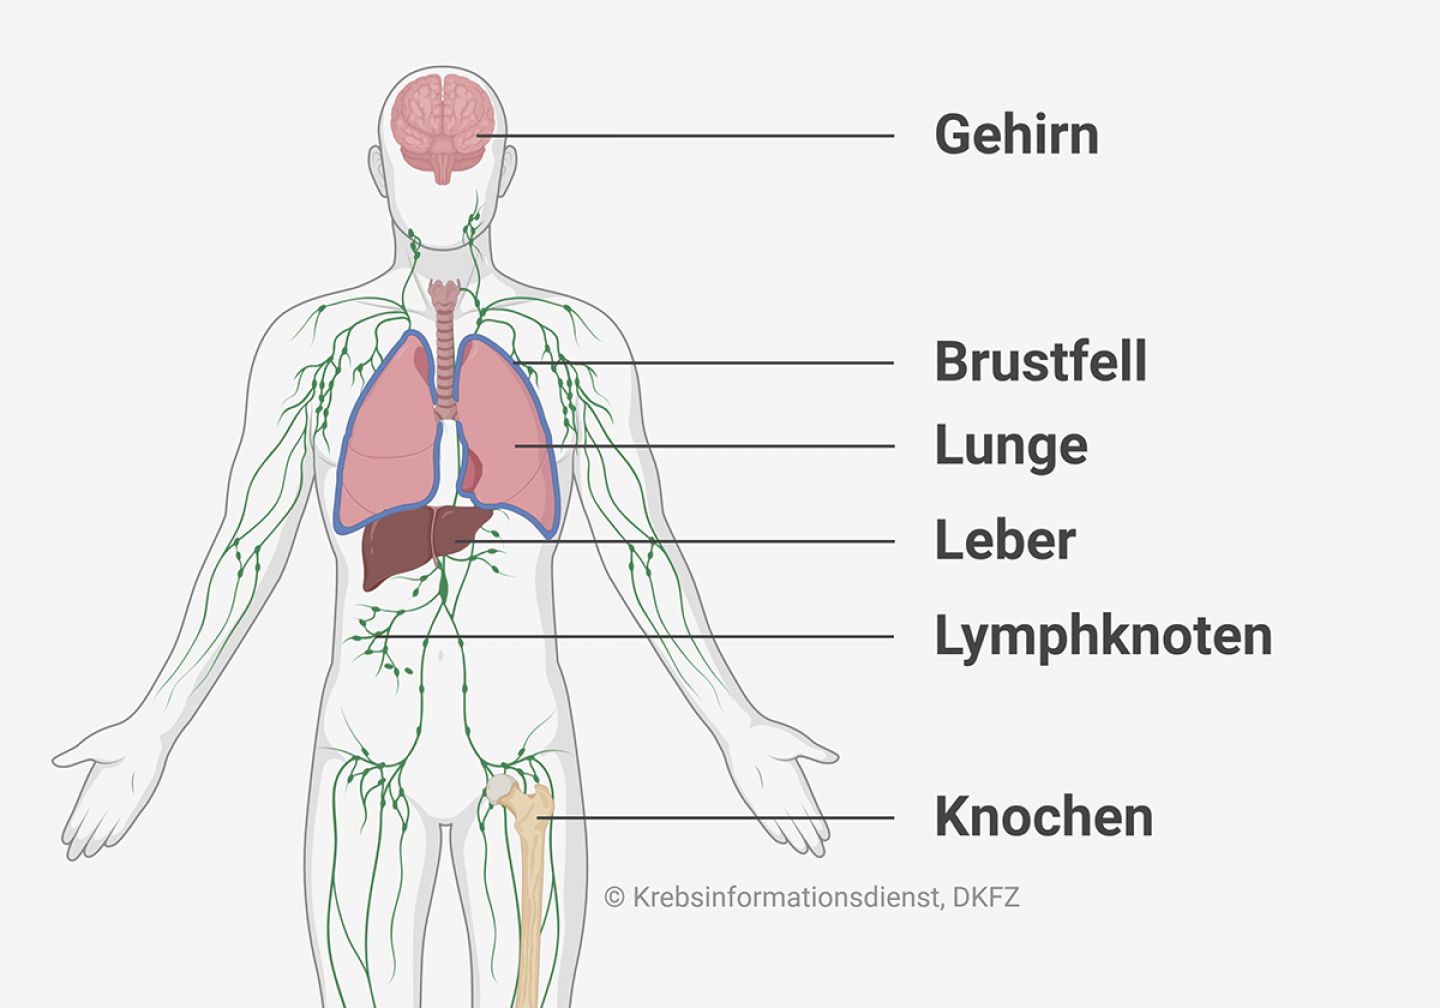 Anatomische Abbildung, die zeigt wo sich beim CUP-Syndrom häufig Metastasen bilden: im Gehirn, Brustfell, Lunge, Leber, Lymphknoten und Knochen.